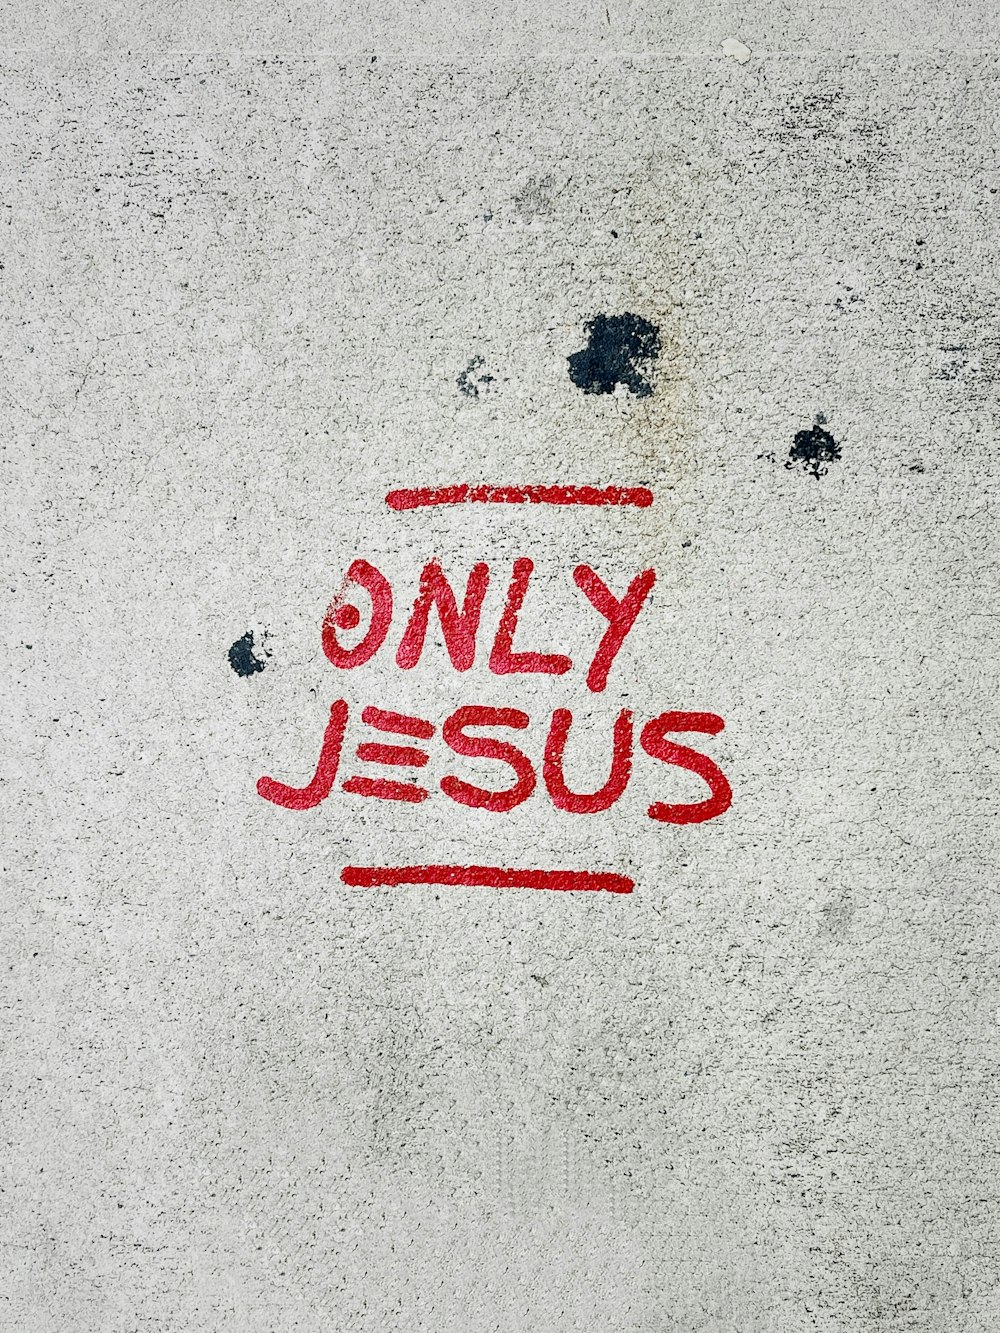 jesus saves wallpaper hd